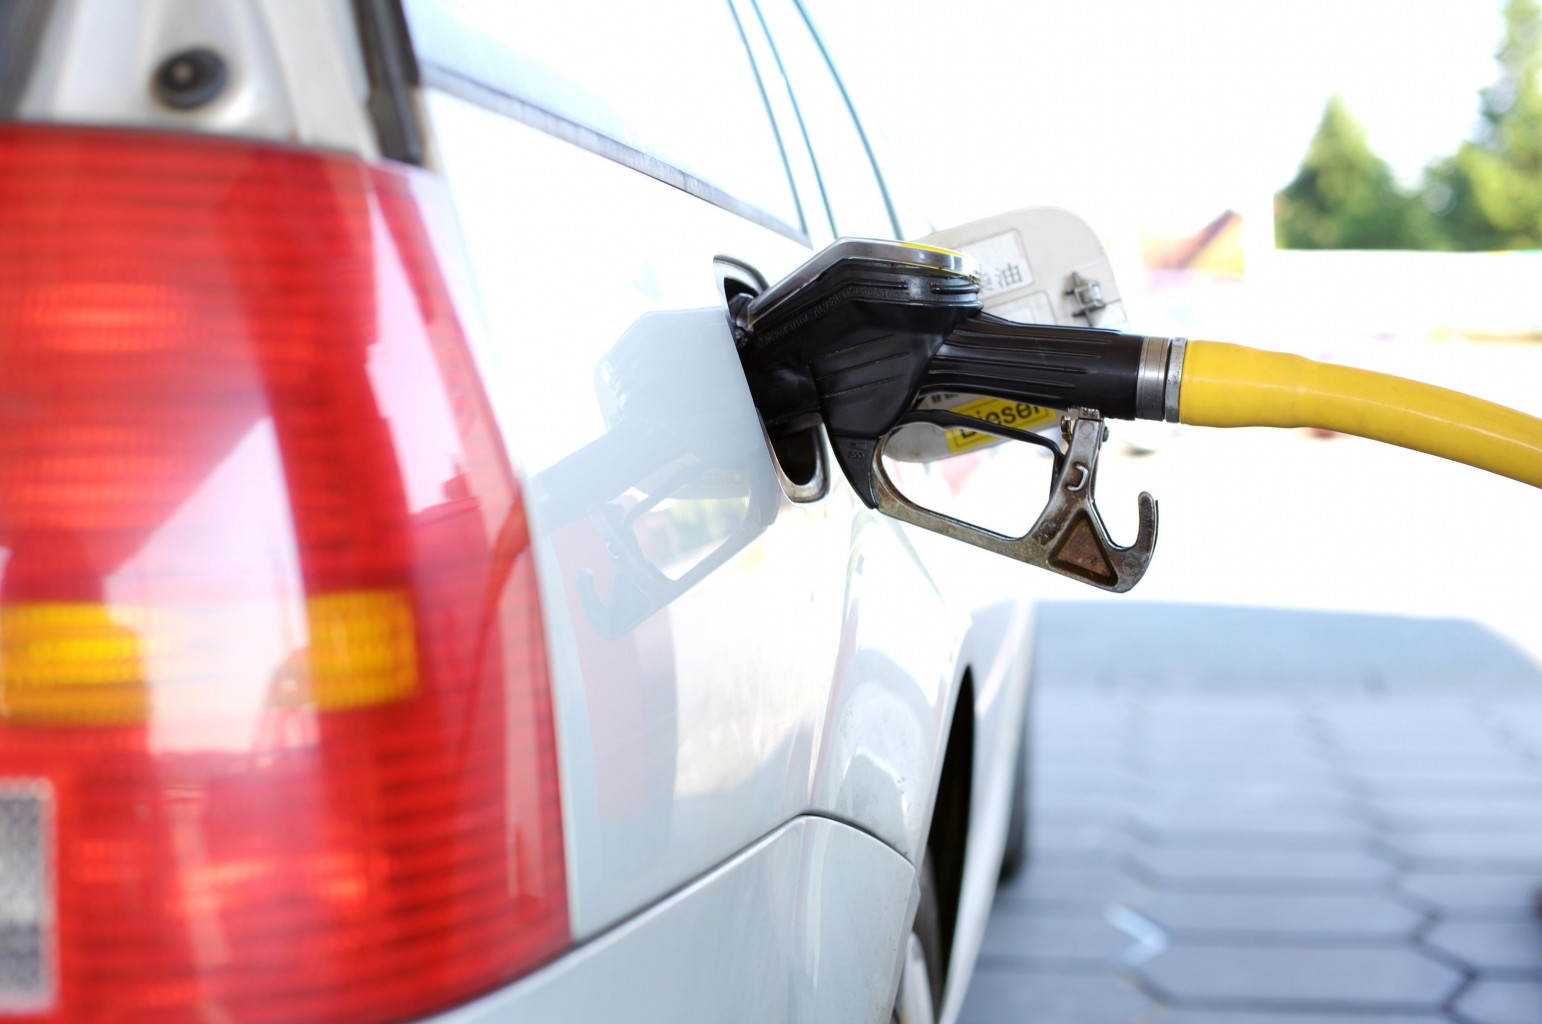 Enmienda para reducir  temporalmente los precios del gas fracasa